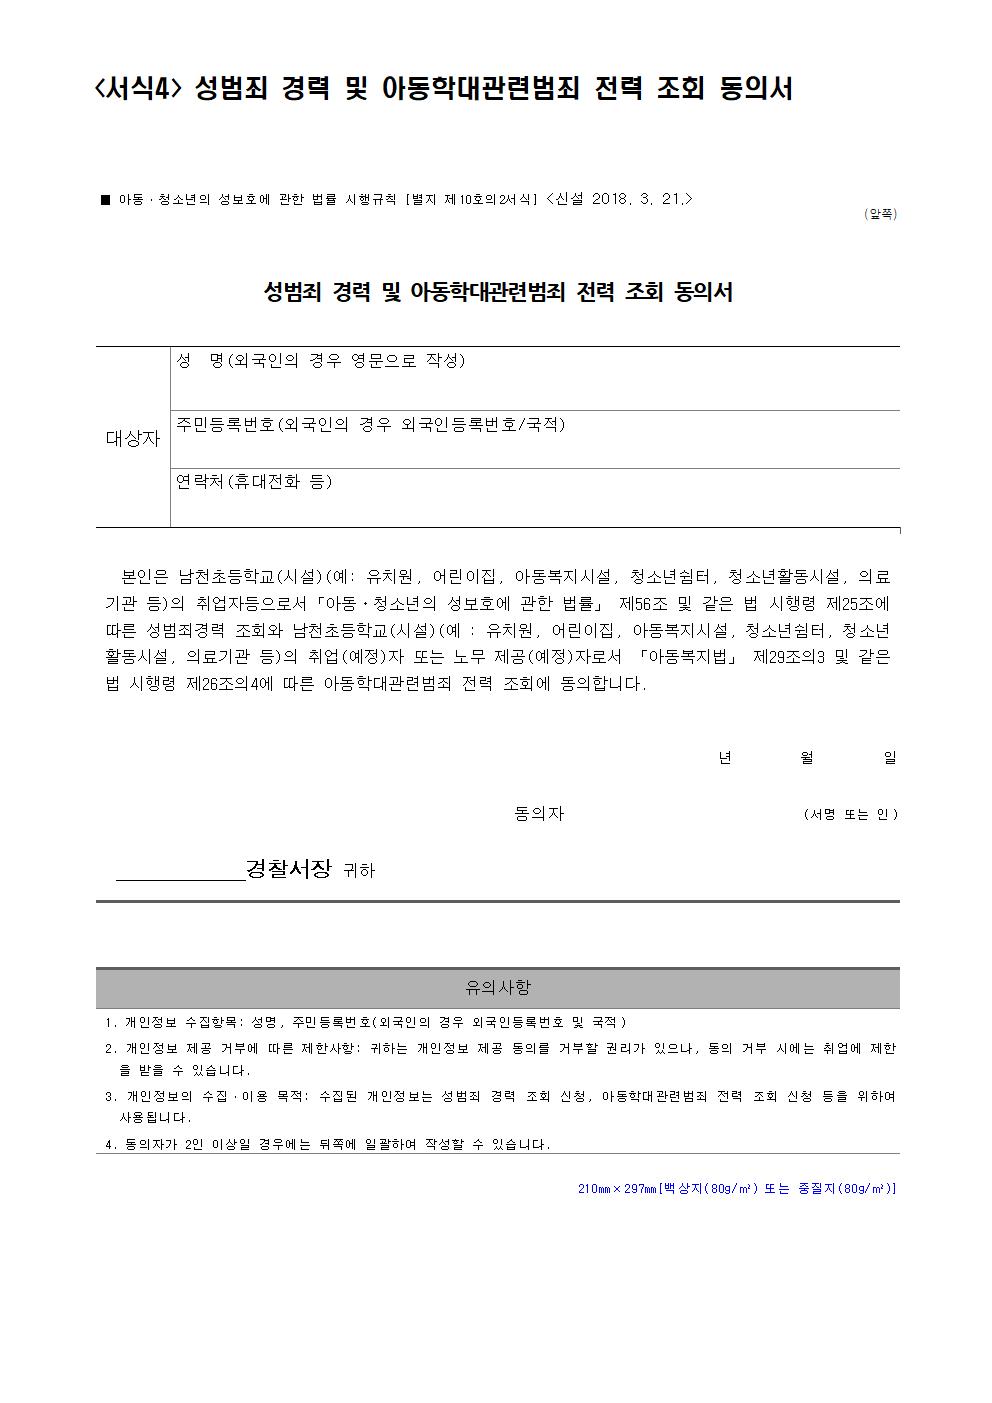 생존수영 실기교육 강사 채용 공고004